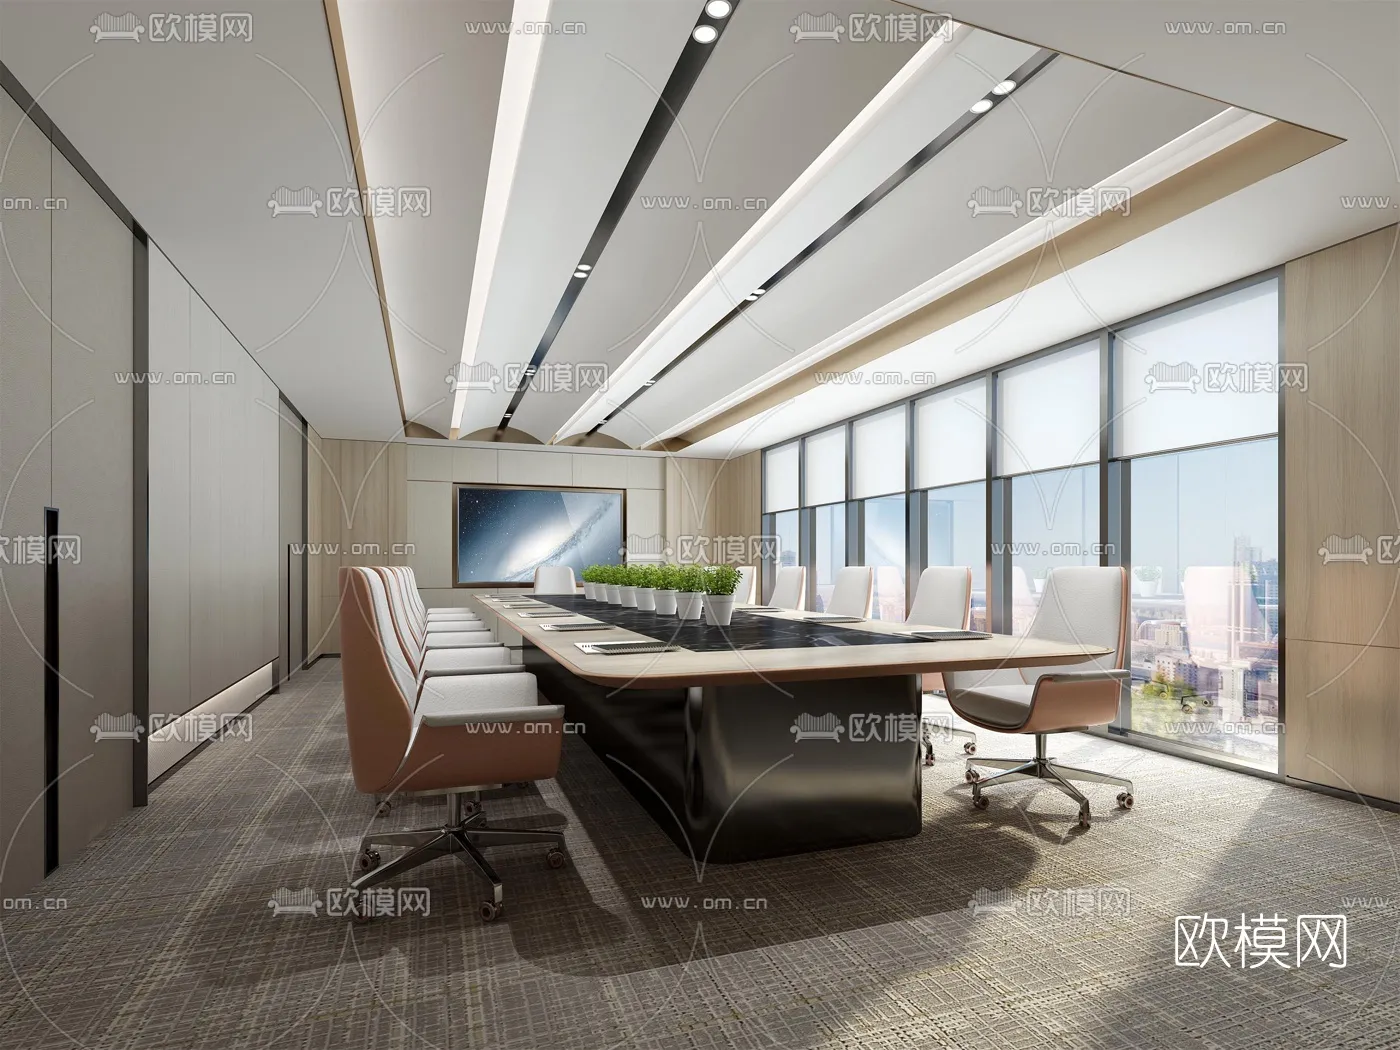 Meeting Room 3D Scenes – 1446